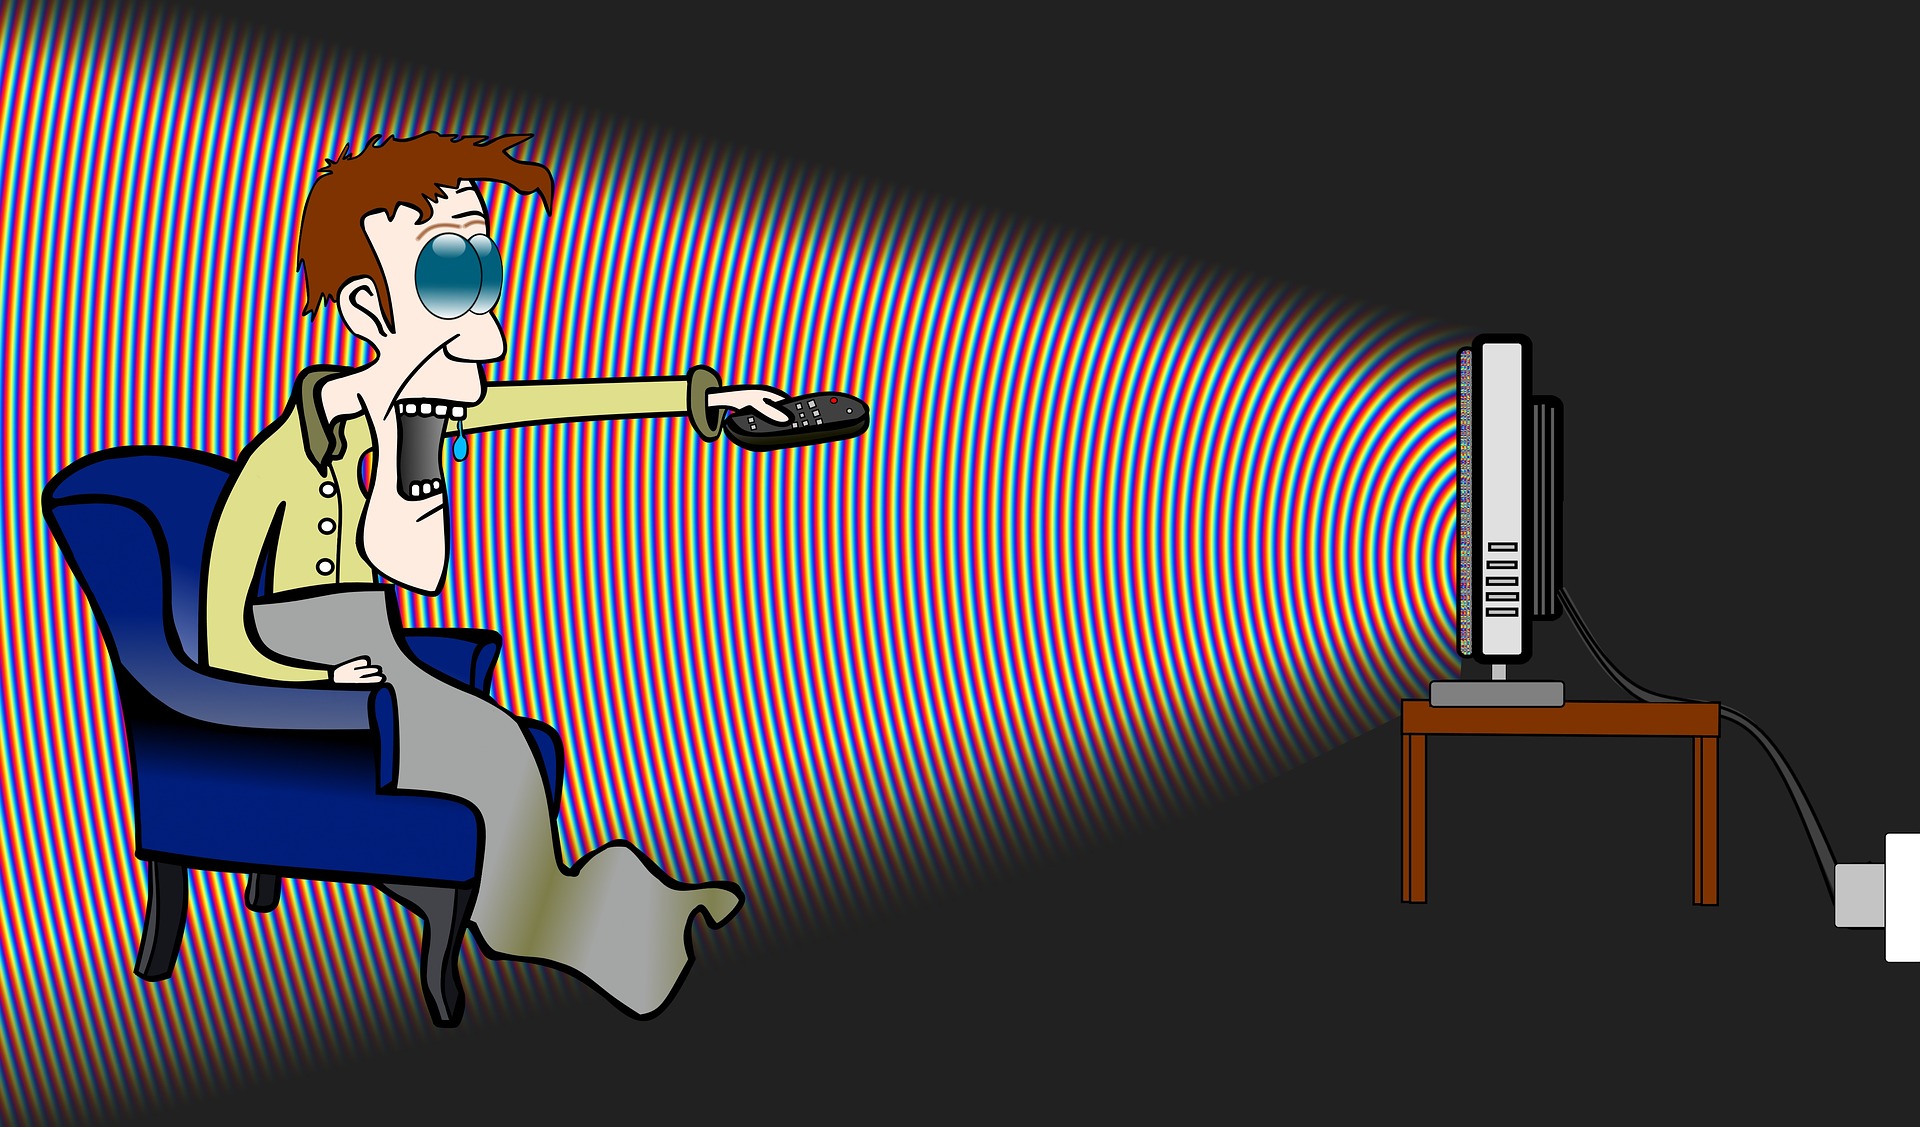 Personnage aux yeux bleus globuleux devant écran avec une télécommande visant une télé